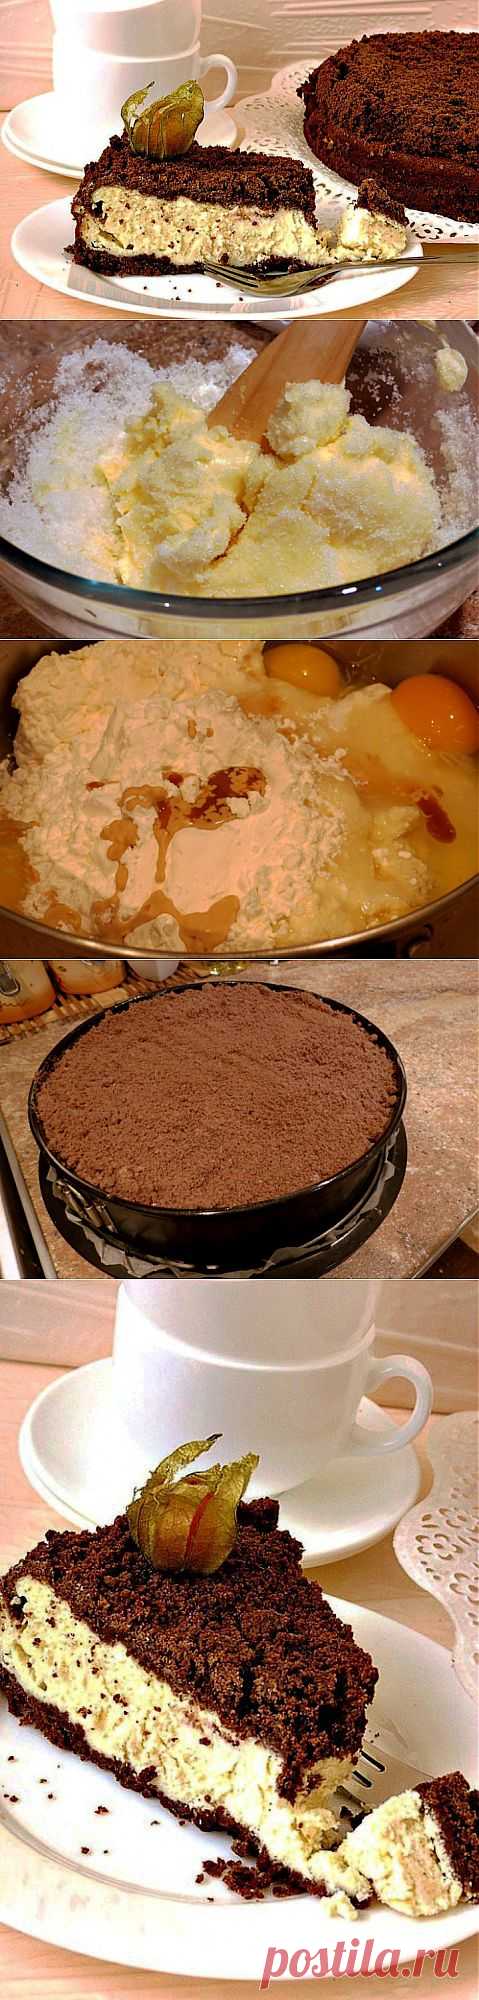 Шоколадно-творожный пирог рецепт. | ВКУСНО ПОЕДИМ!